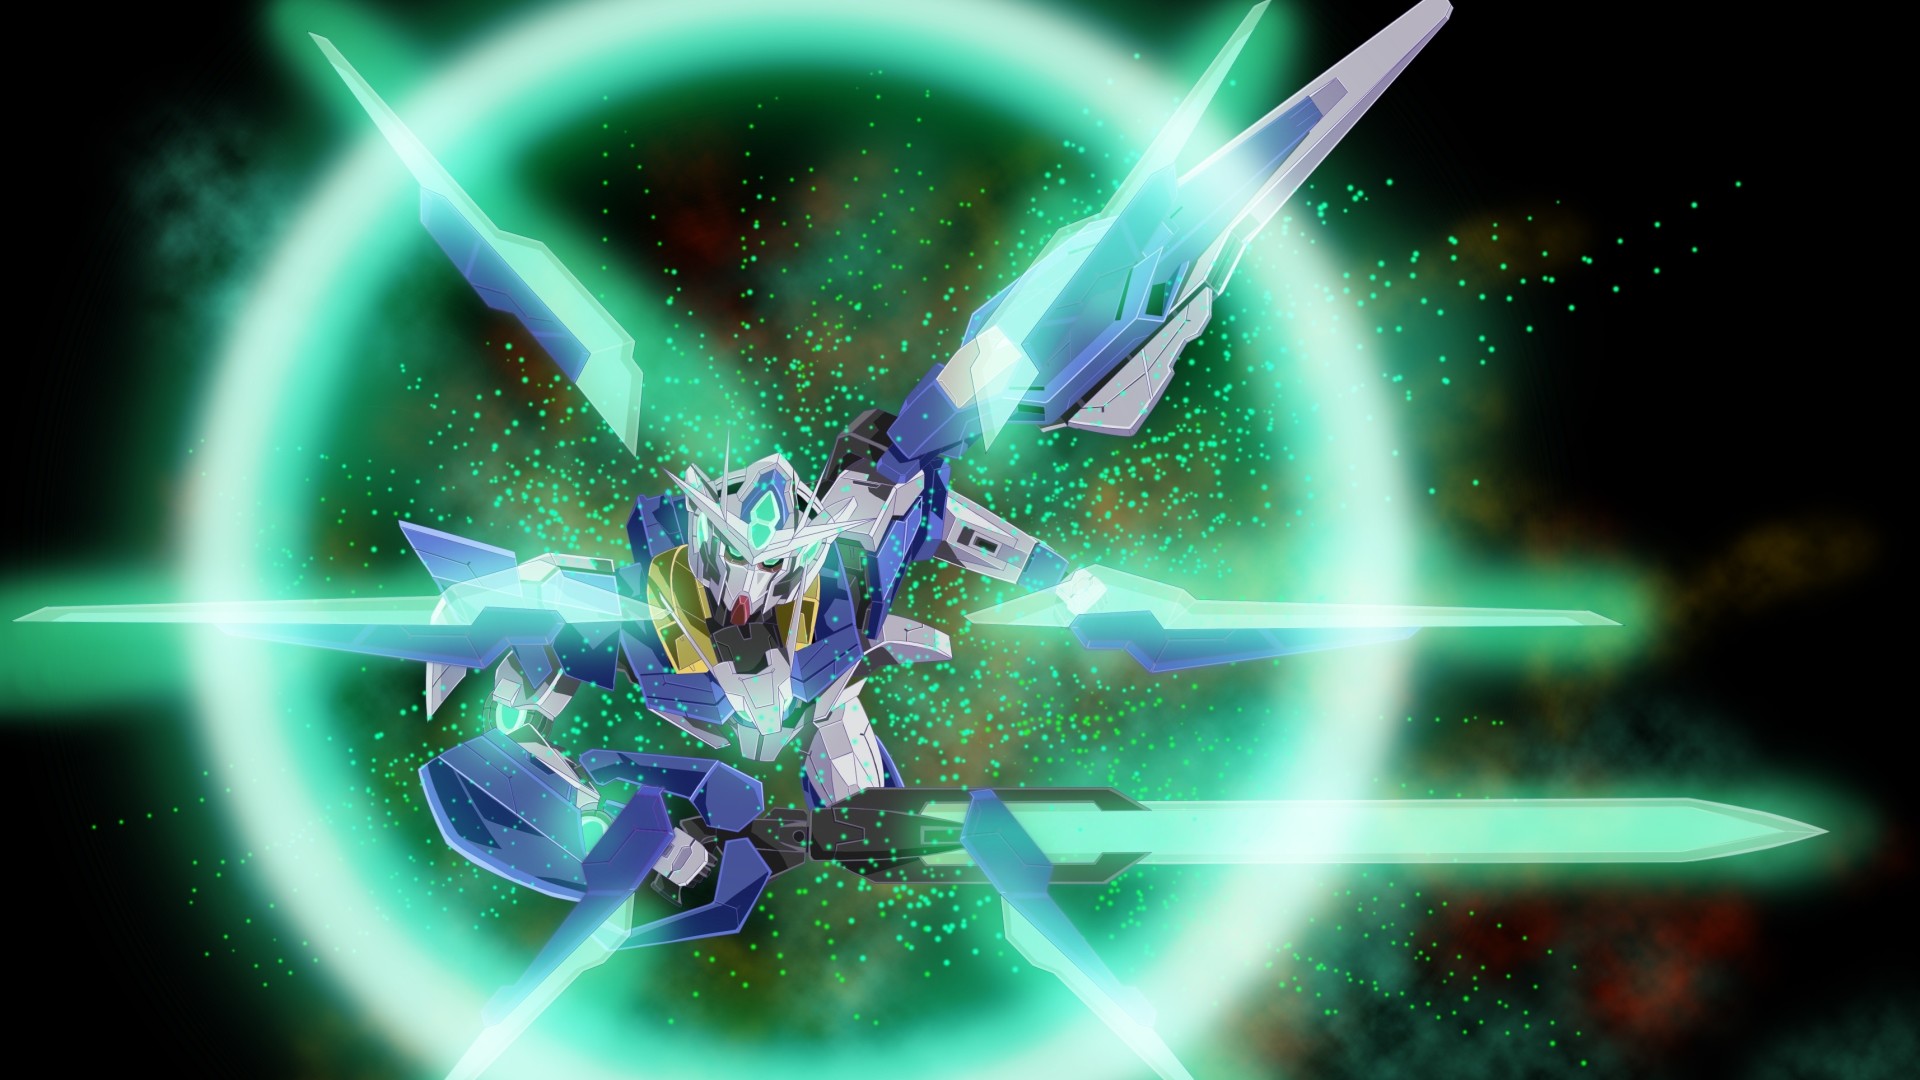 1920x1080 Gundam 00 Wallpaper 1441x900 W48yr67 Picserio Com